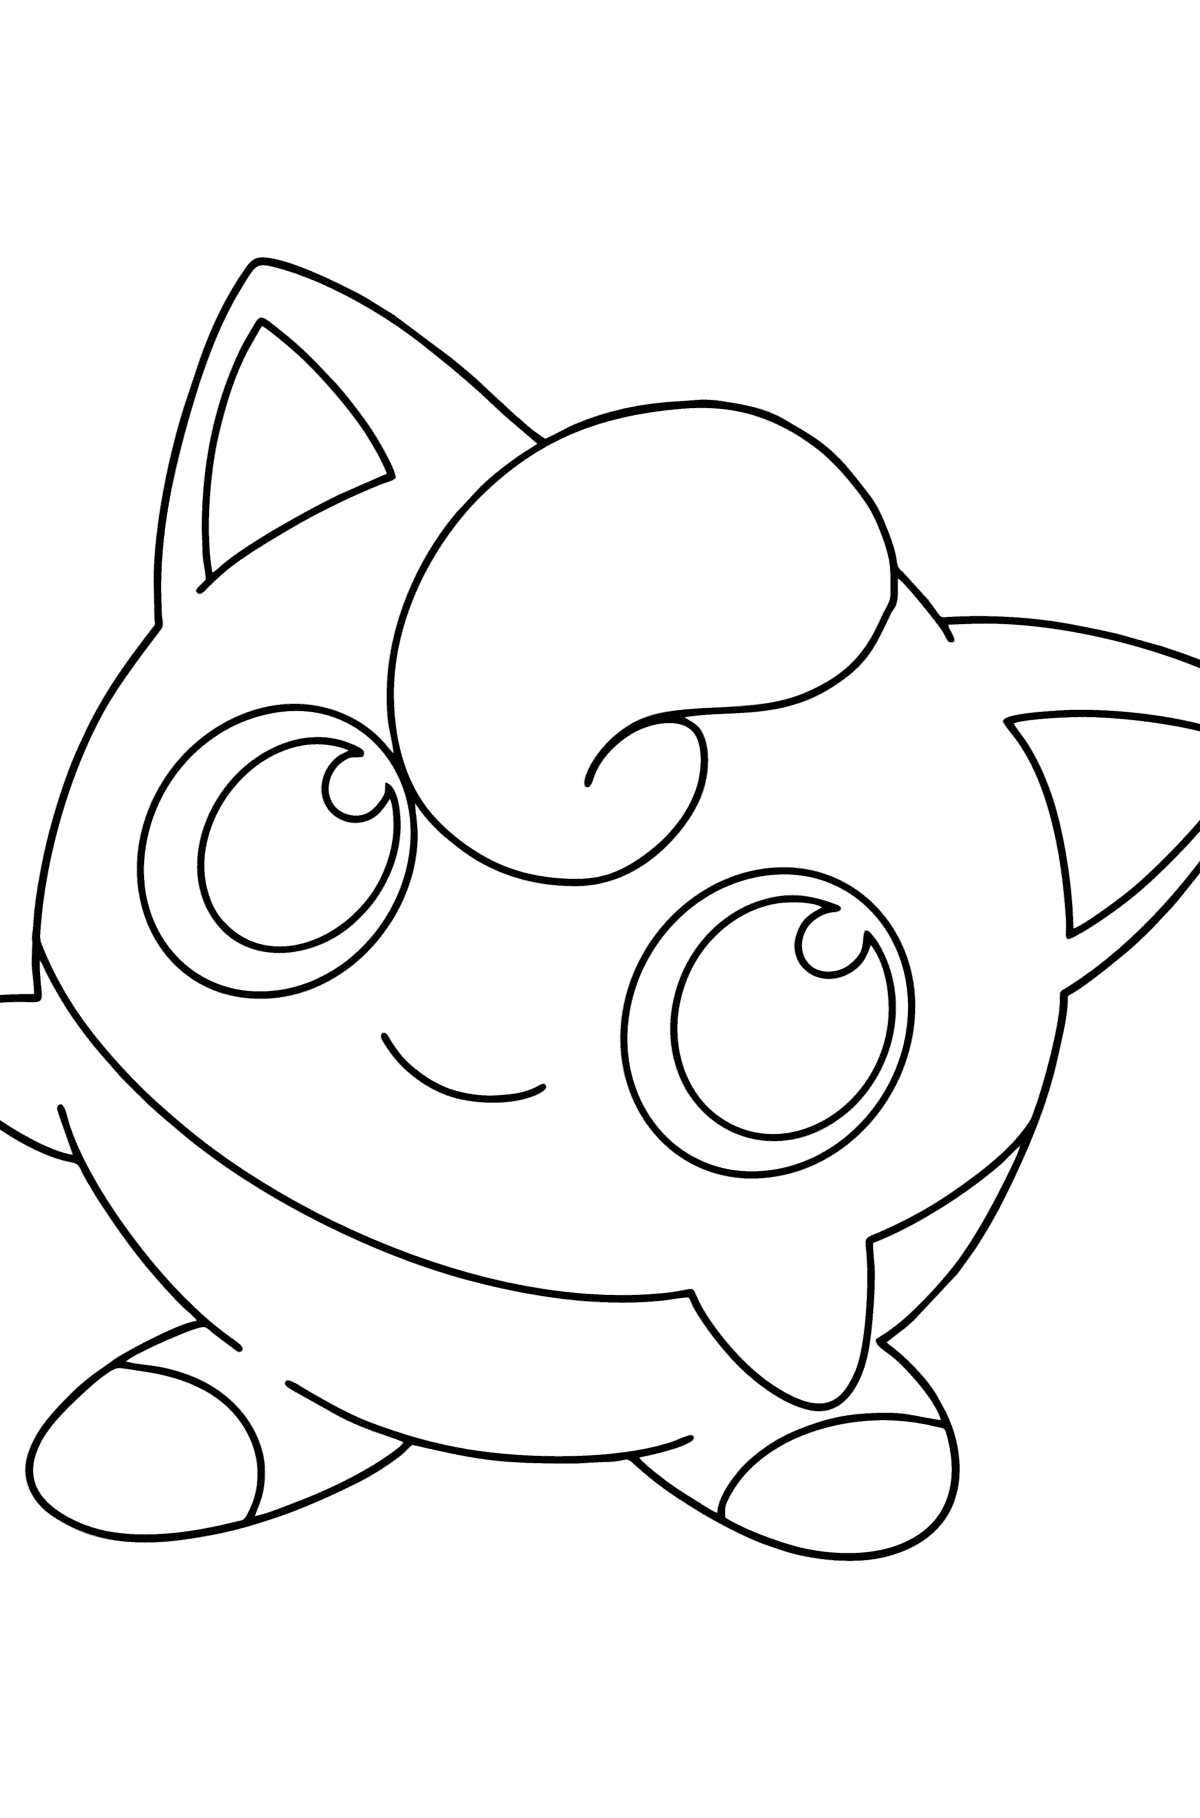 Desenho de Pokémon Go Jigglypuff para colorir - Imagens para Colorir para Crianças